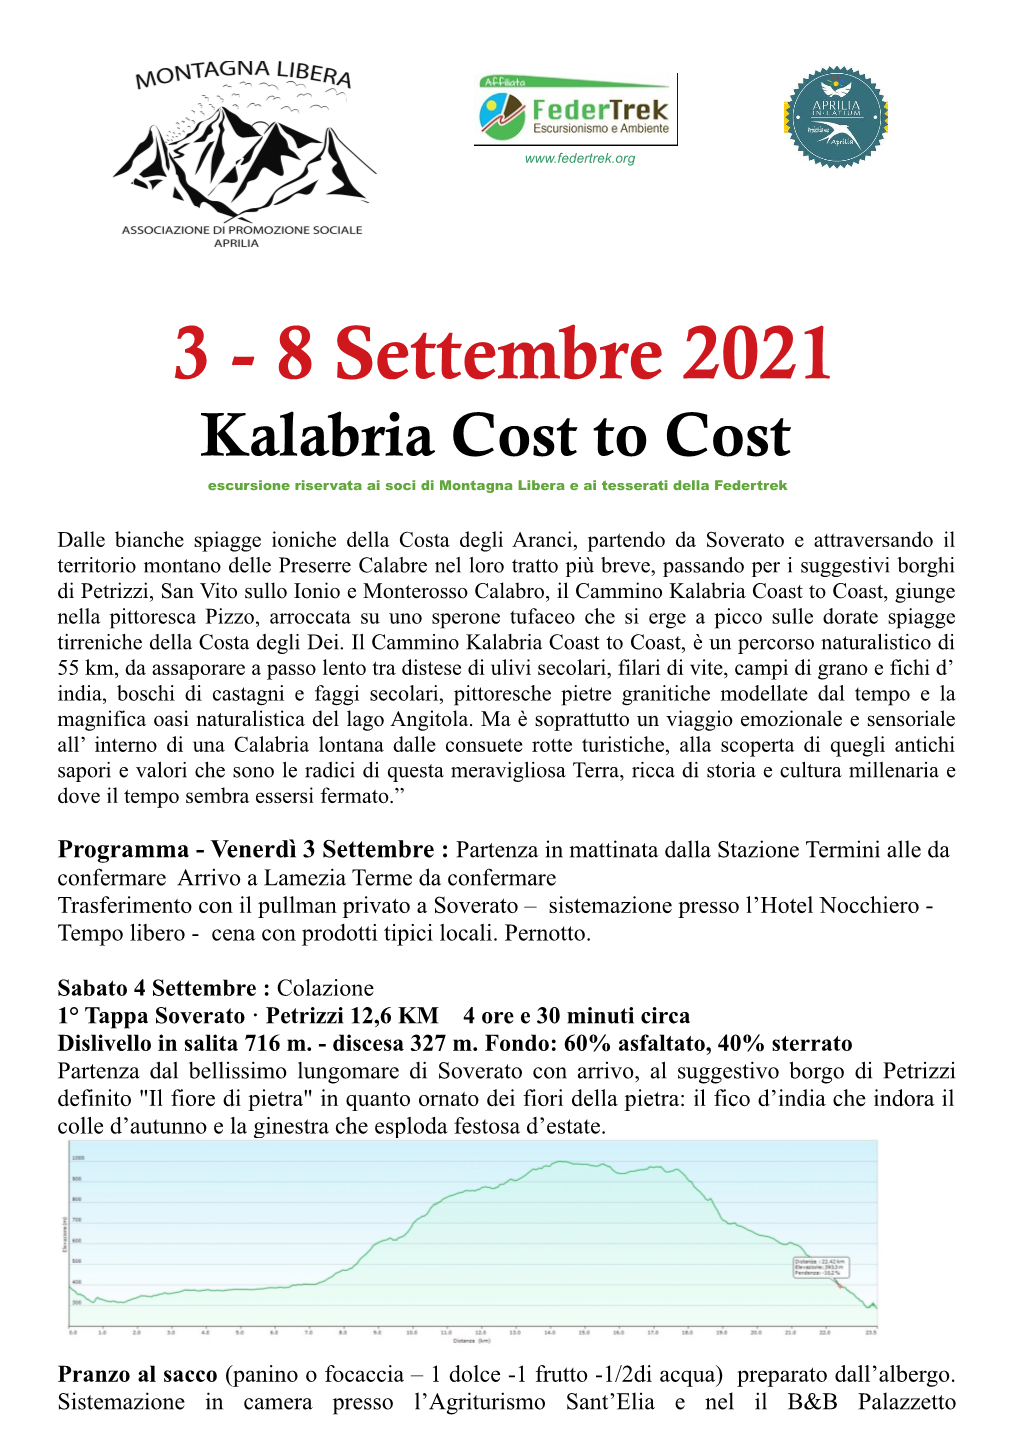 3 - 8 Settembre 2021 Kalabria Cost to Cost Escursione Riservata Ai Soci Di Montagna Libera E Ai Tesserati Della Federtrek